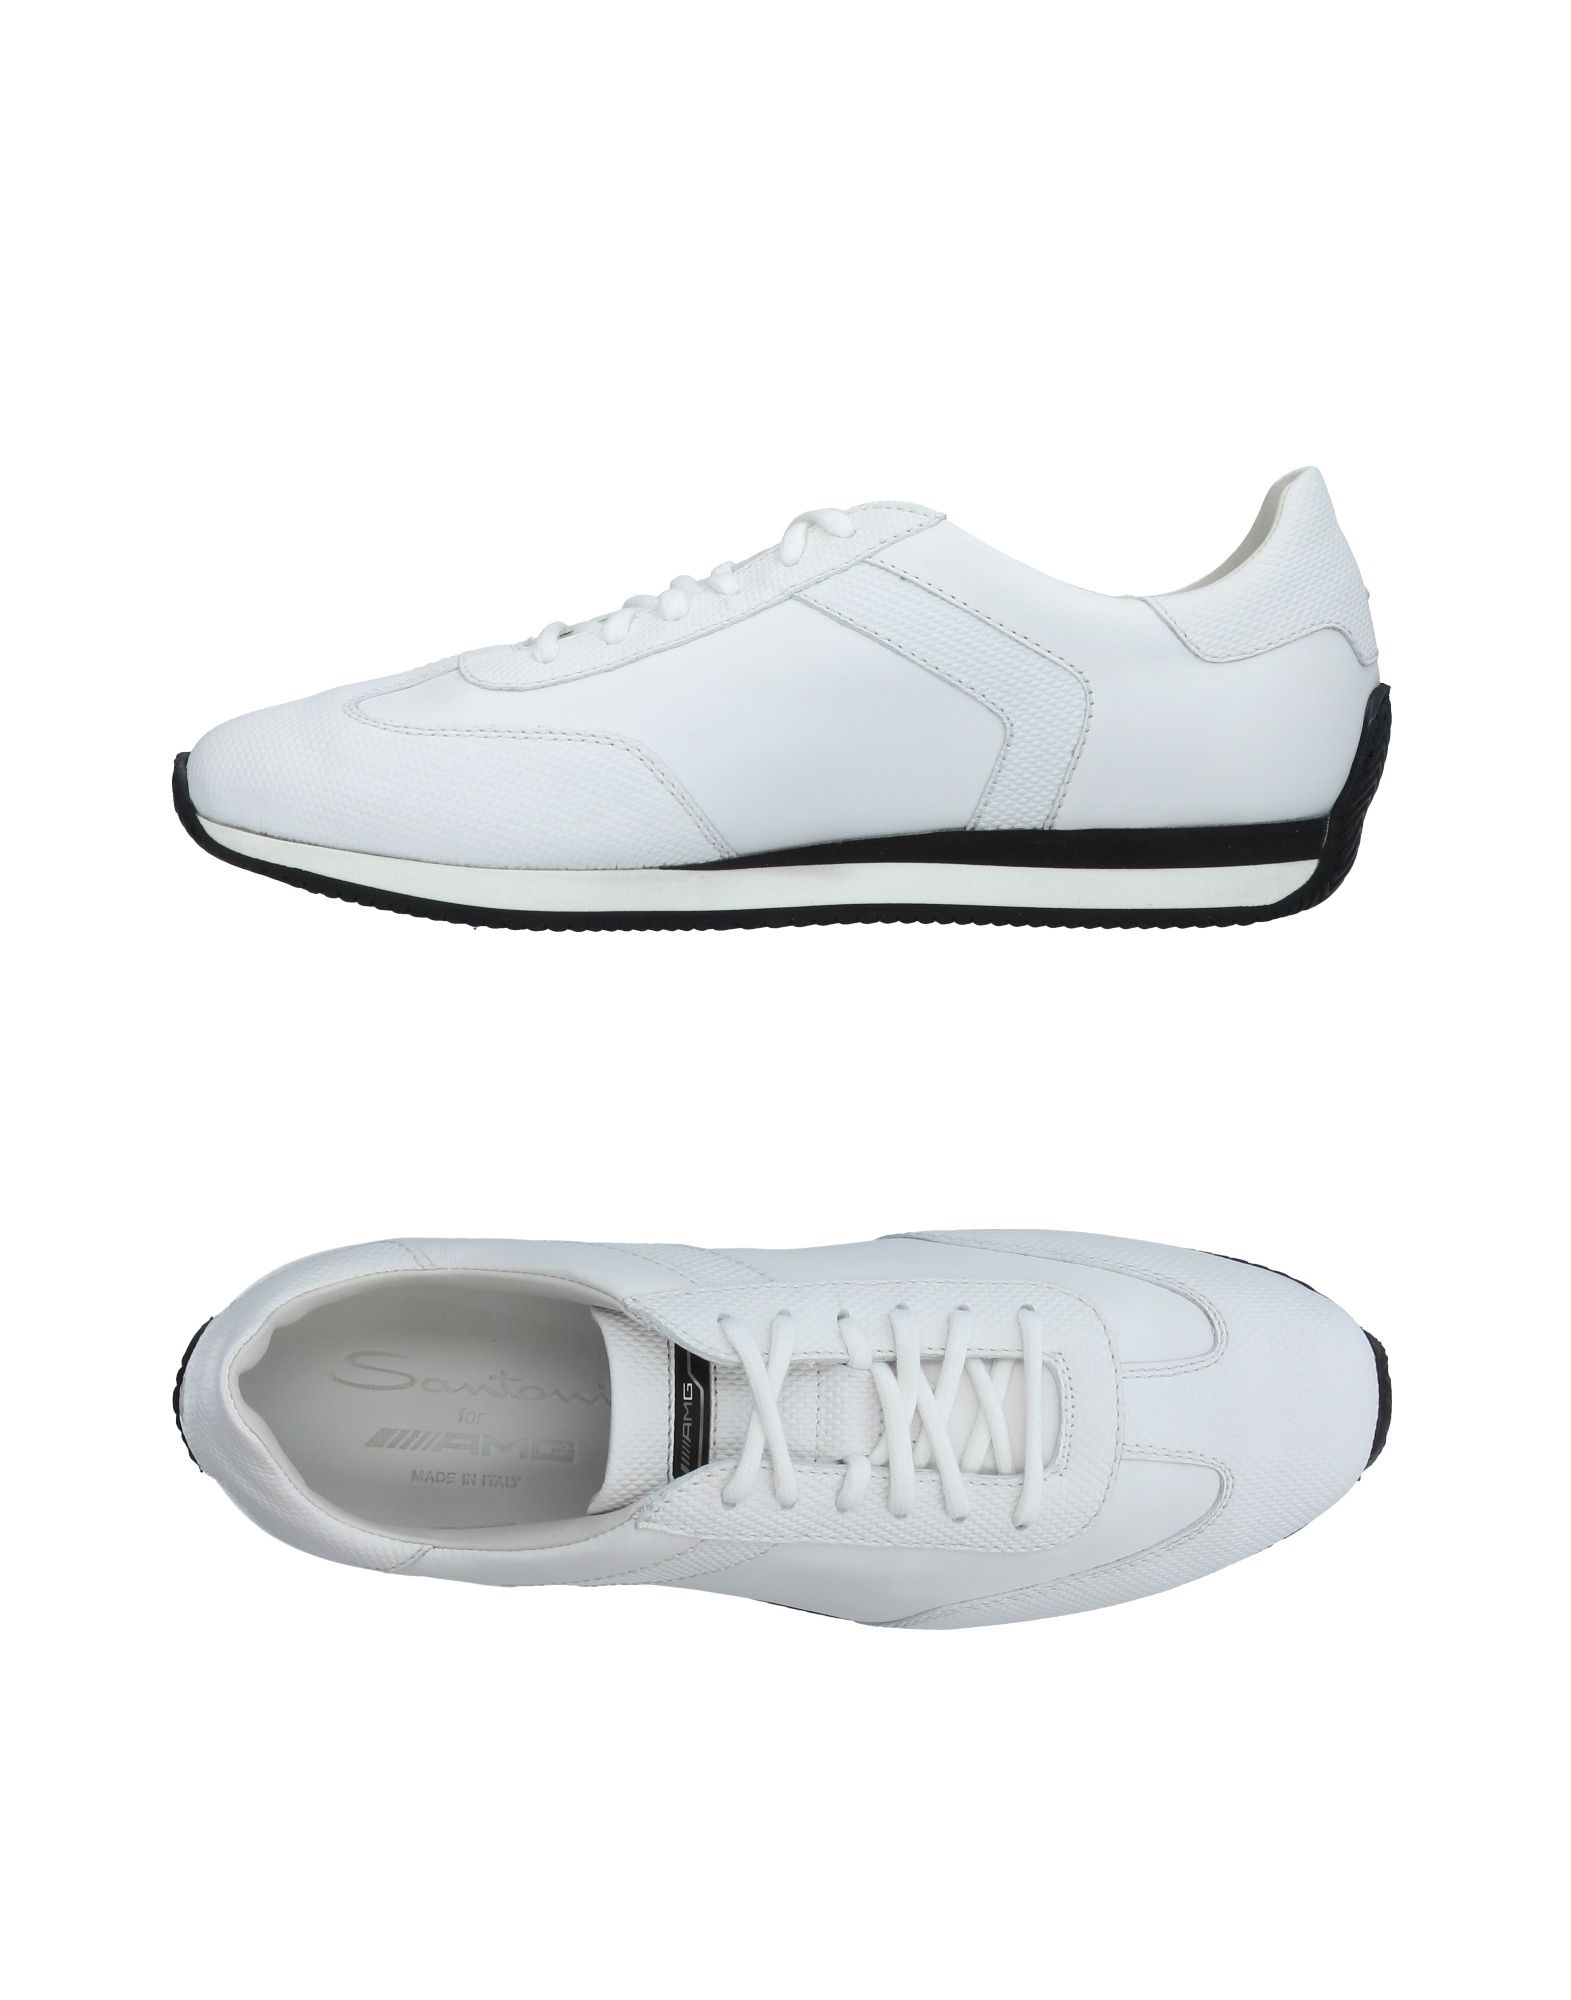 SANTONI Low-tops & sneakers - Item 11410817